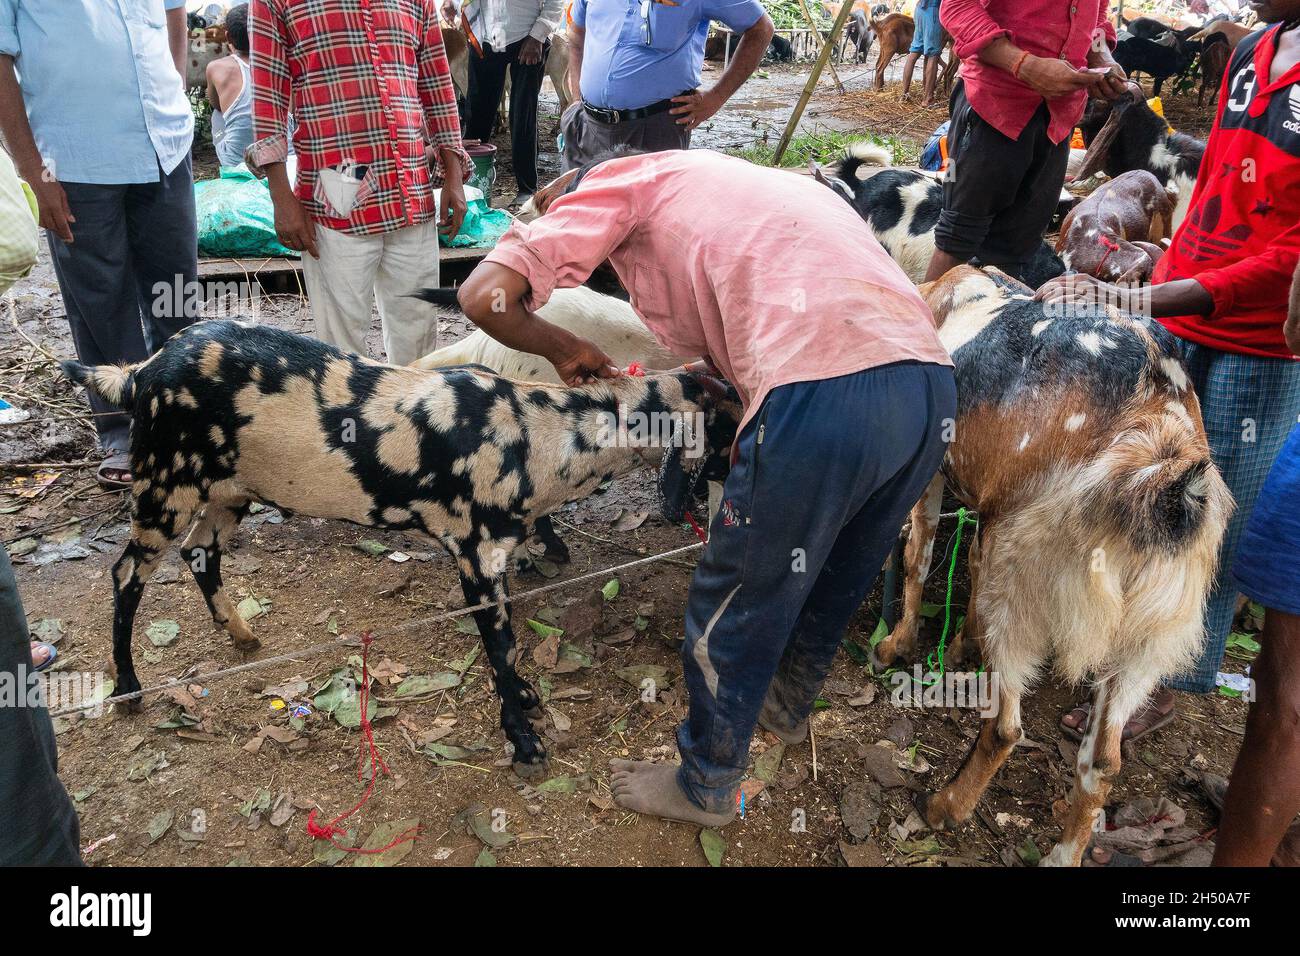 Kalkutta, Westbengalen, Indien - 11.. August 2019: Verkäufer und Käufer negotaiting Preis für Ziegen während 'Eid al-Adha' oder 'Fest des Opfers'. Stockfoto